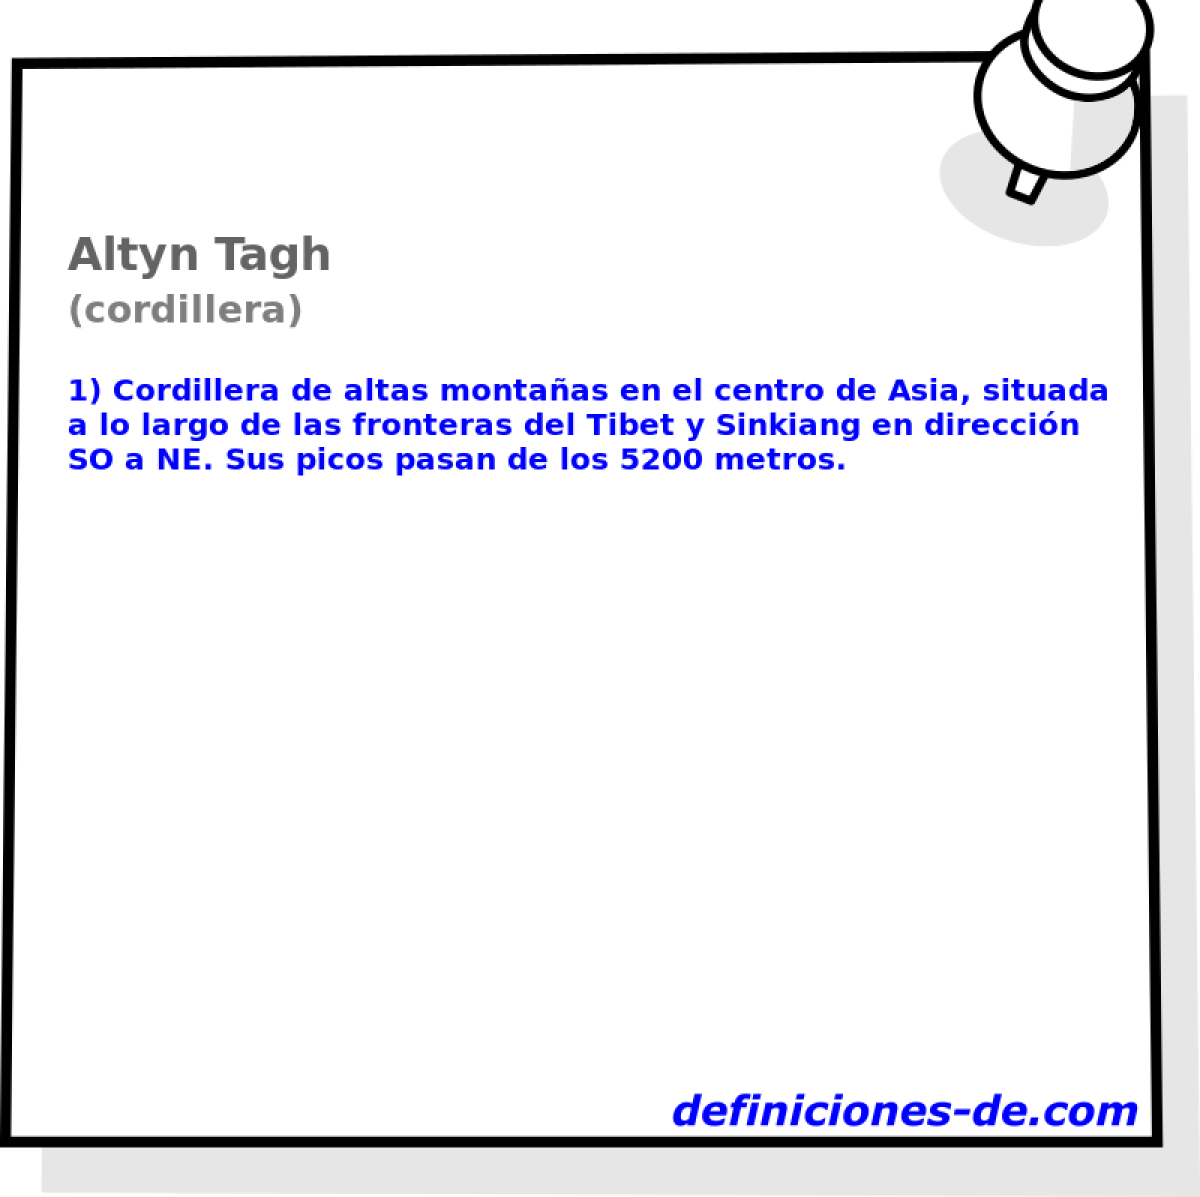 Altyn Tagh (cordillera)